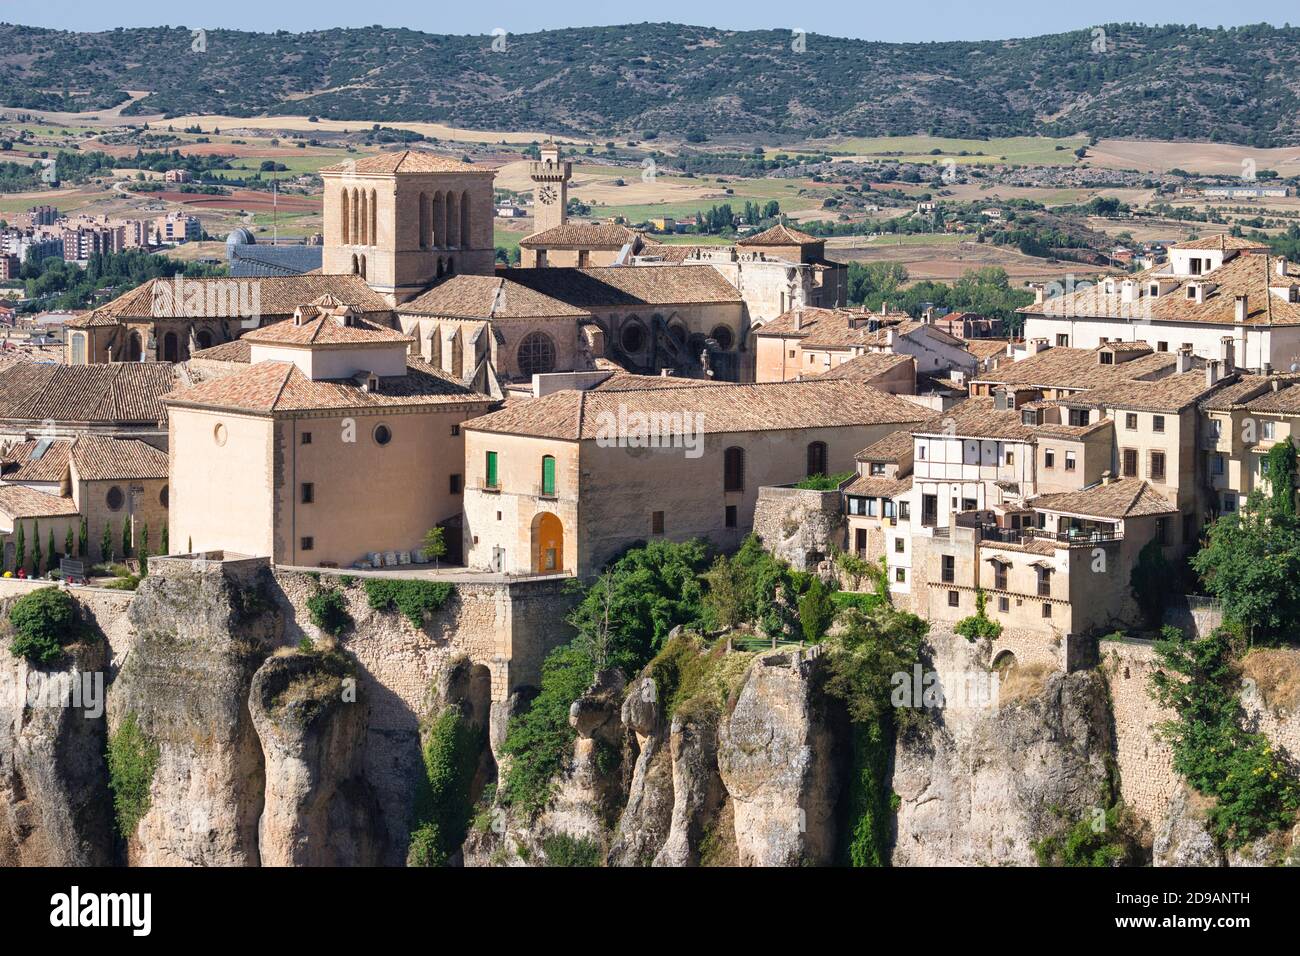 Cathédrale de Cuenca vue depuis le point de vue du château, Espagne Banque D'Images